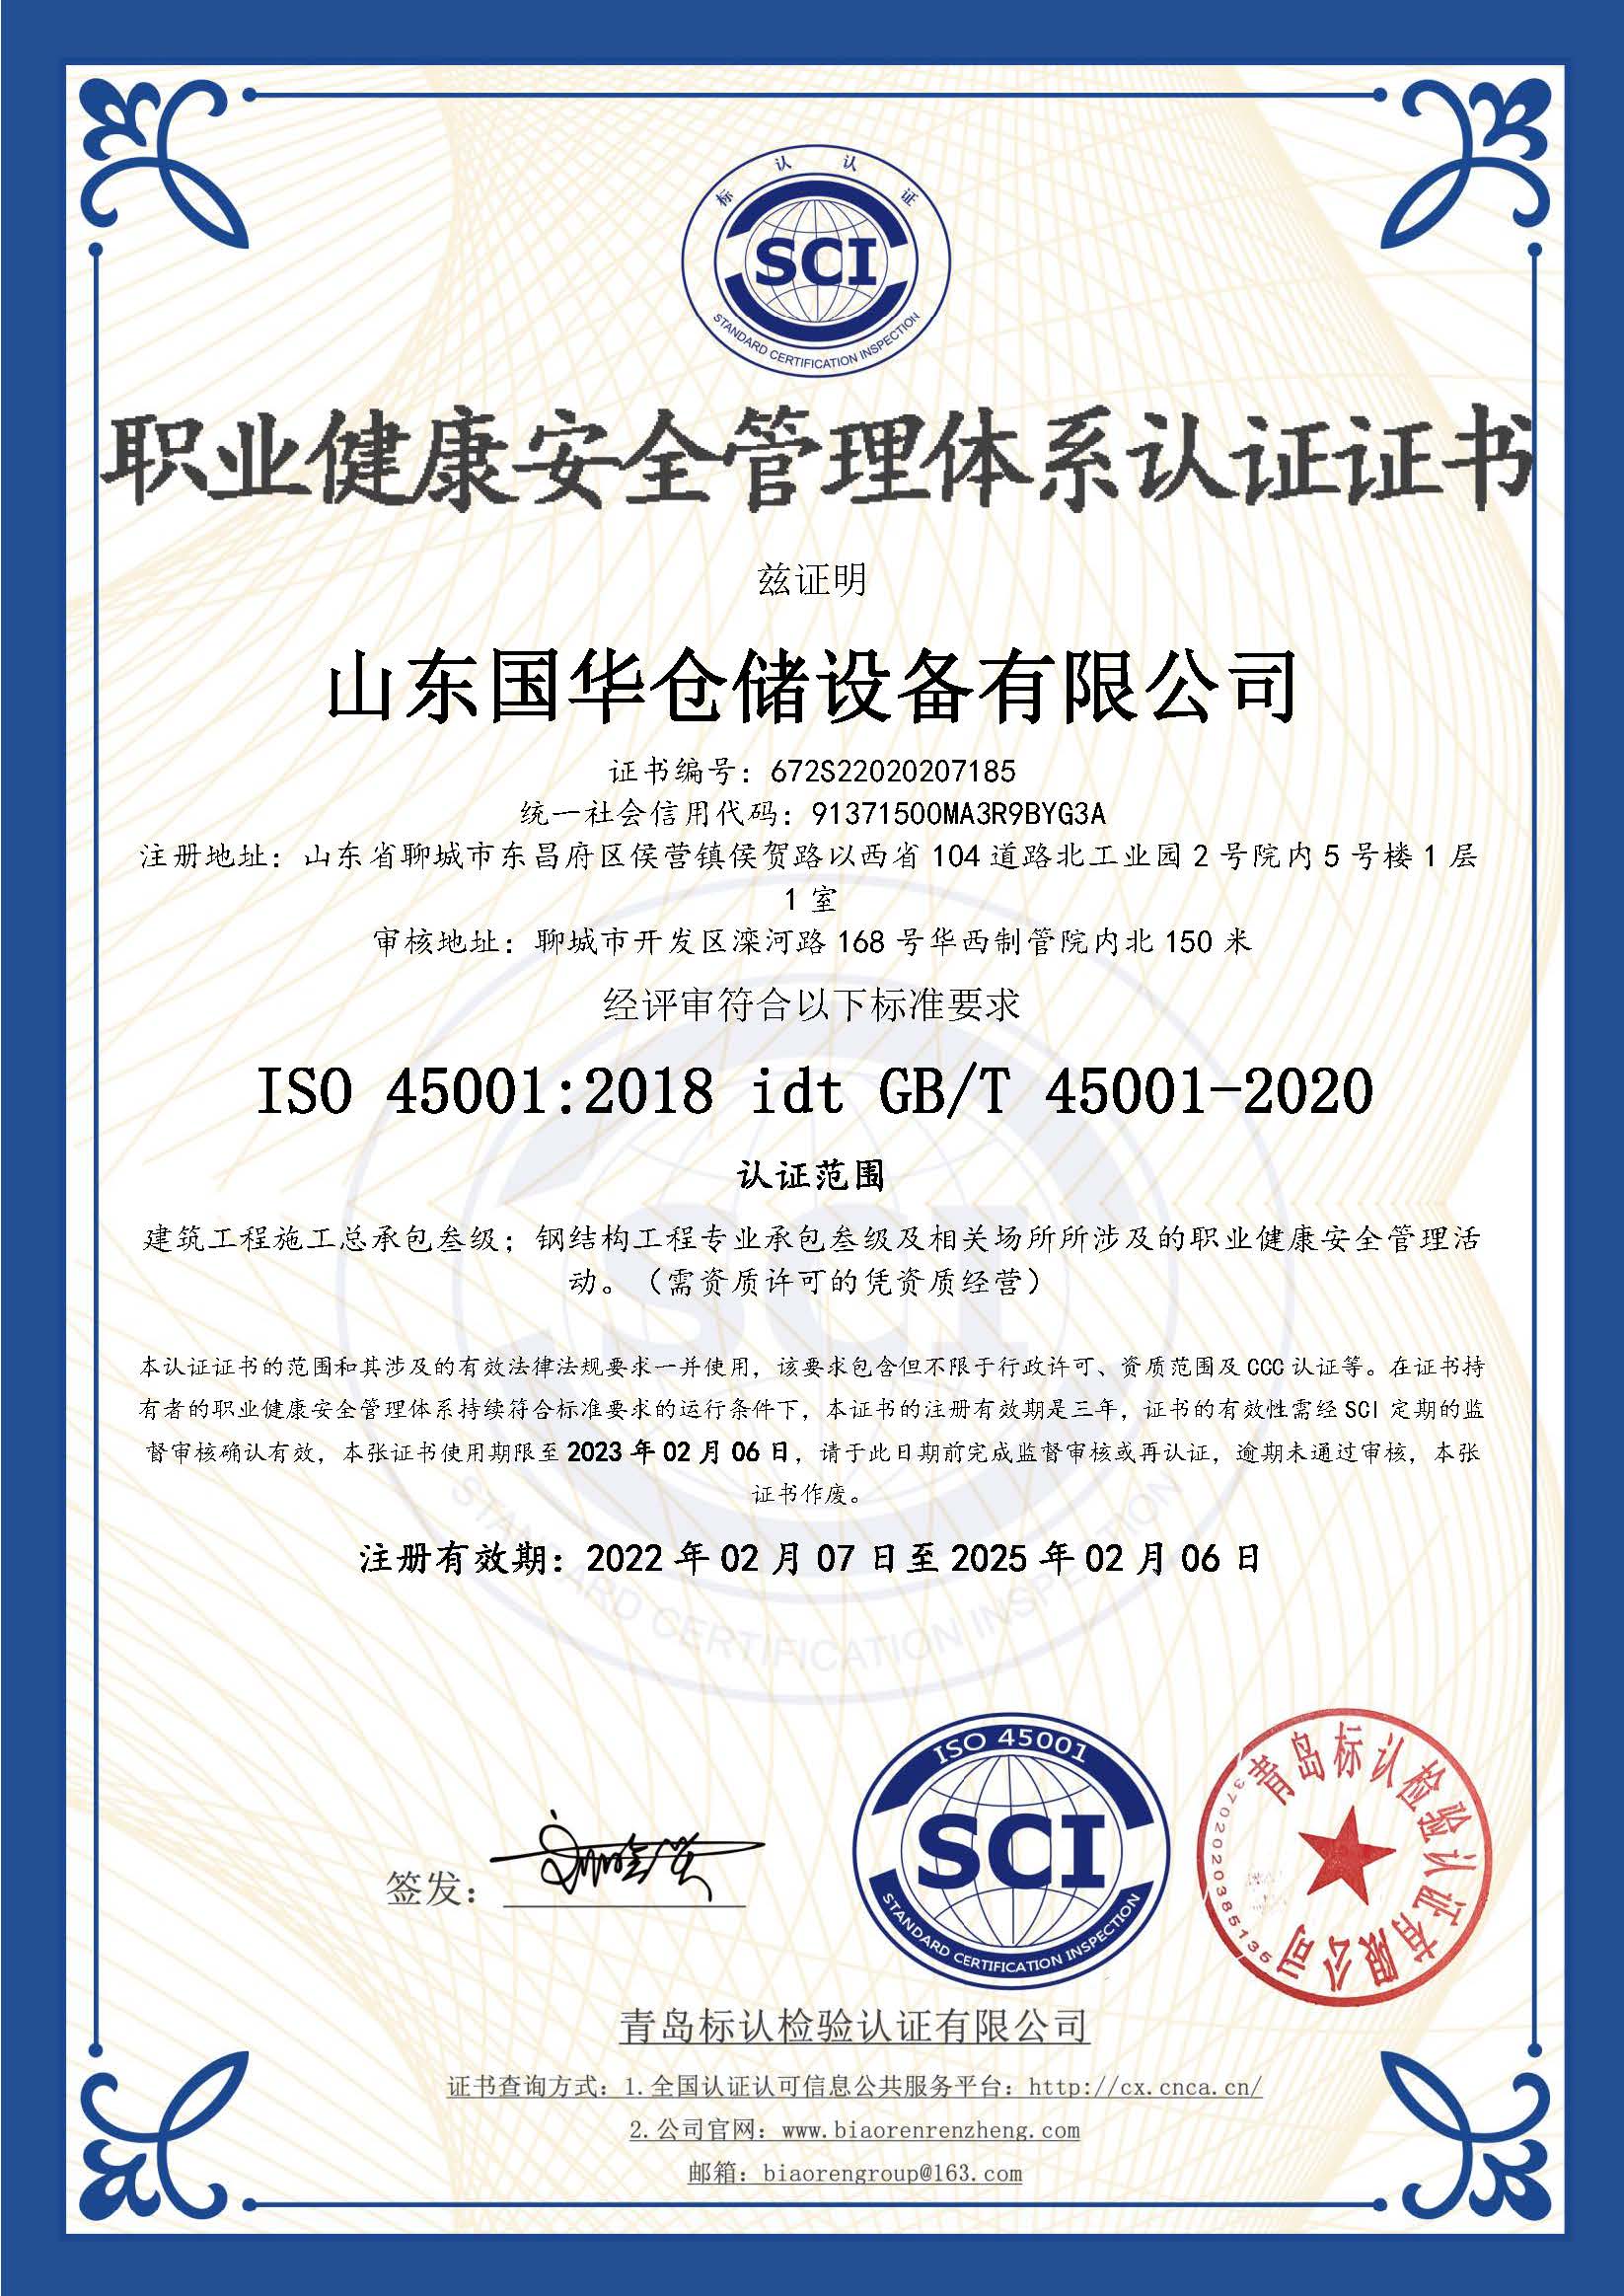 昆明钢板仓职业健康安全管理体系认证证书